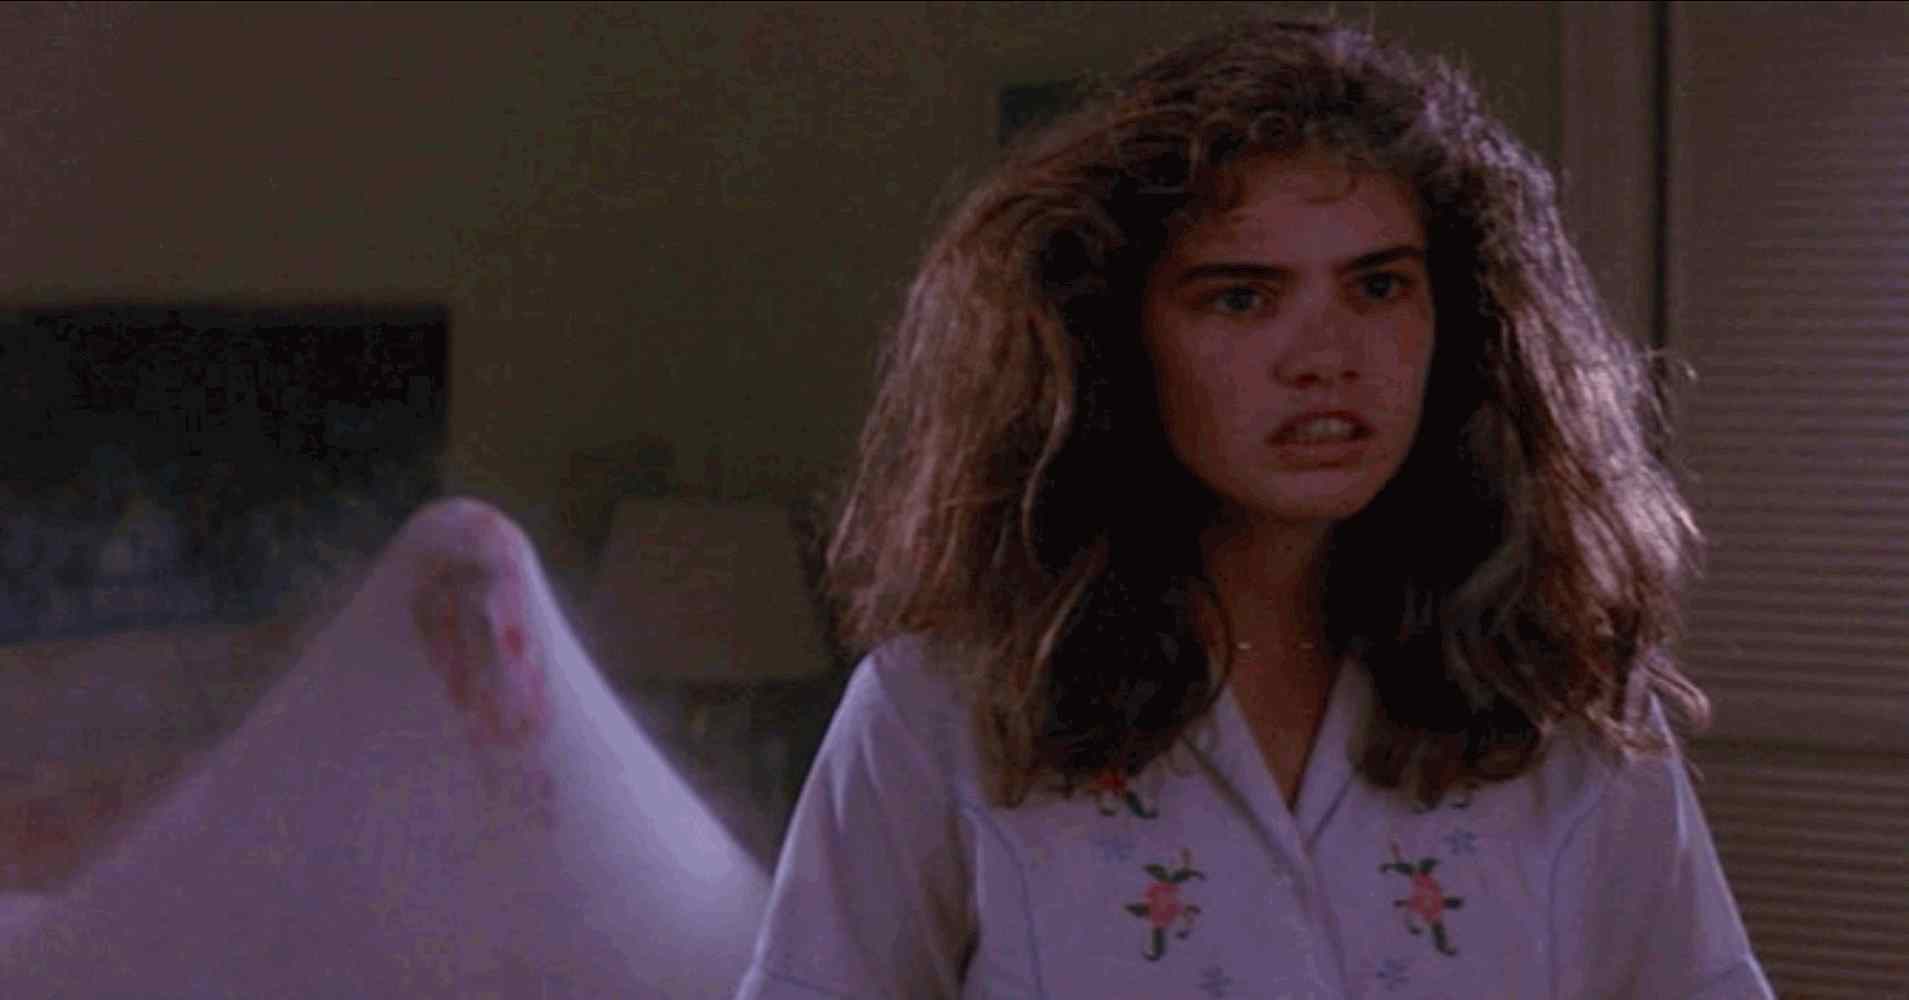 Nancy (Heather Langenkamp) in Wes Craven's A Nightmare on Elm Street.